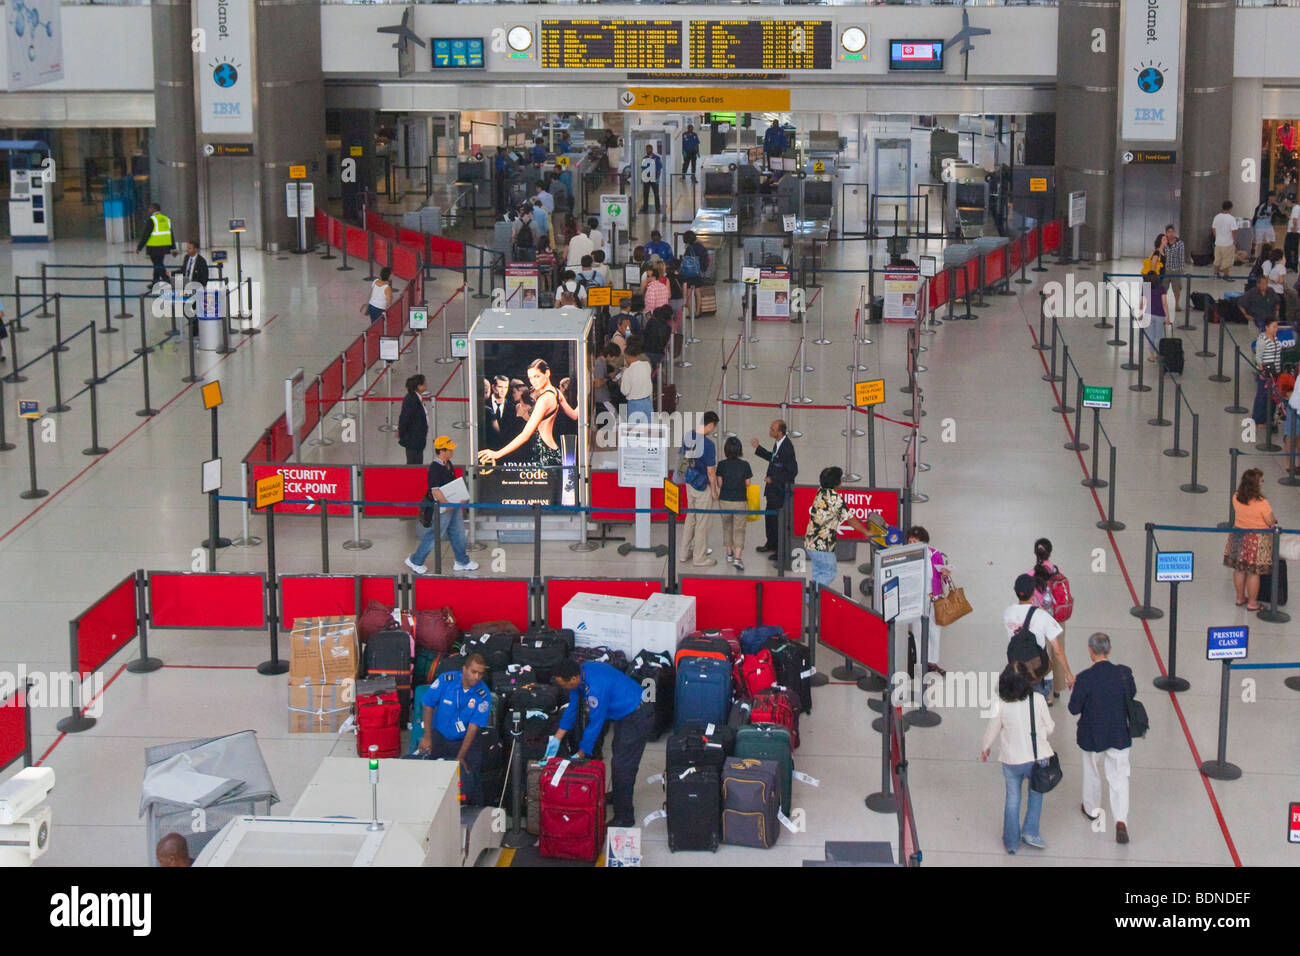 Sicherheit Prüfpunkt innen JFK International Airport in New York Stockfoto